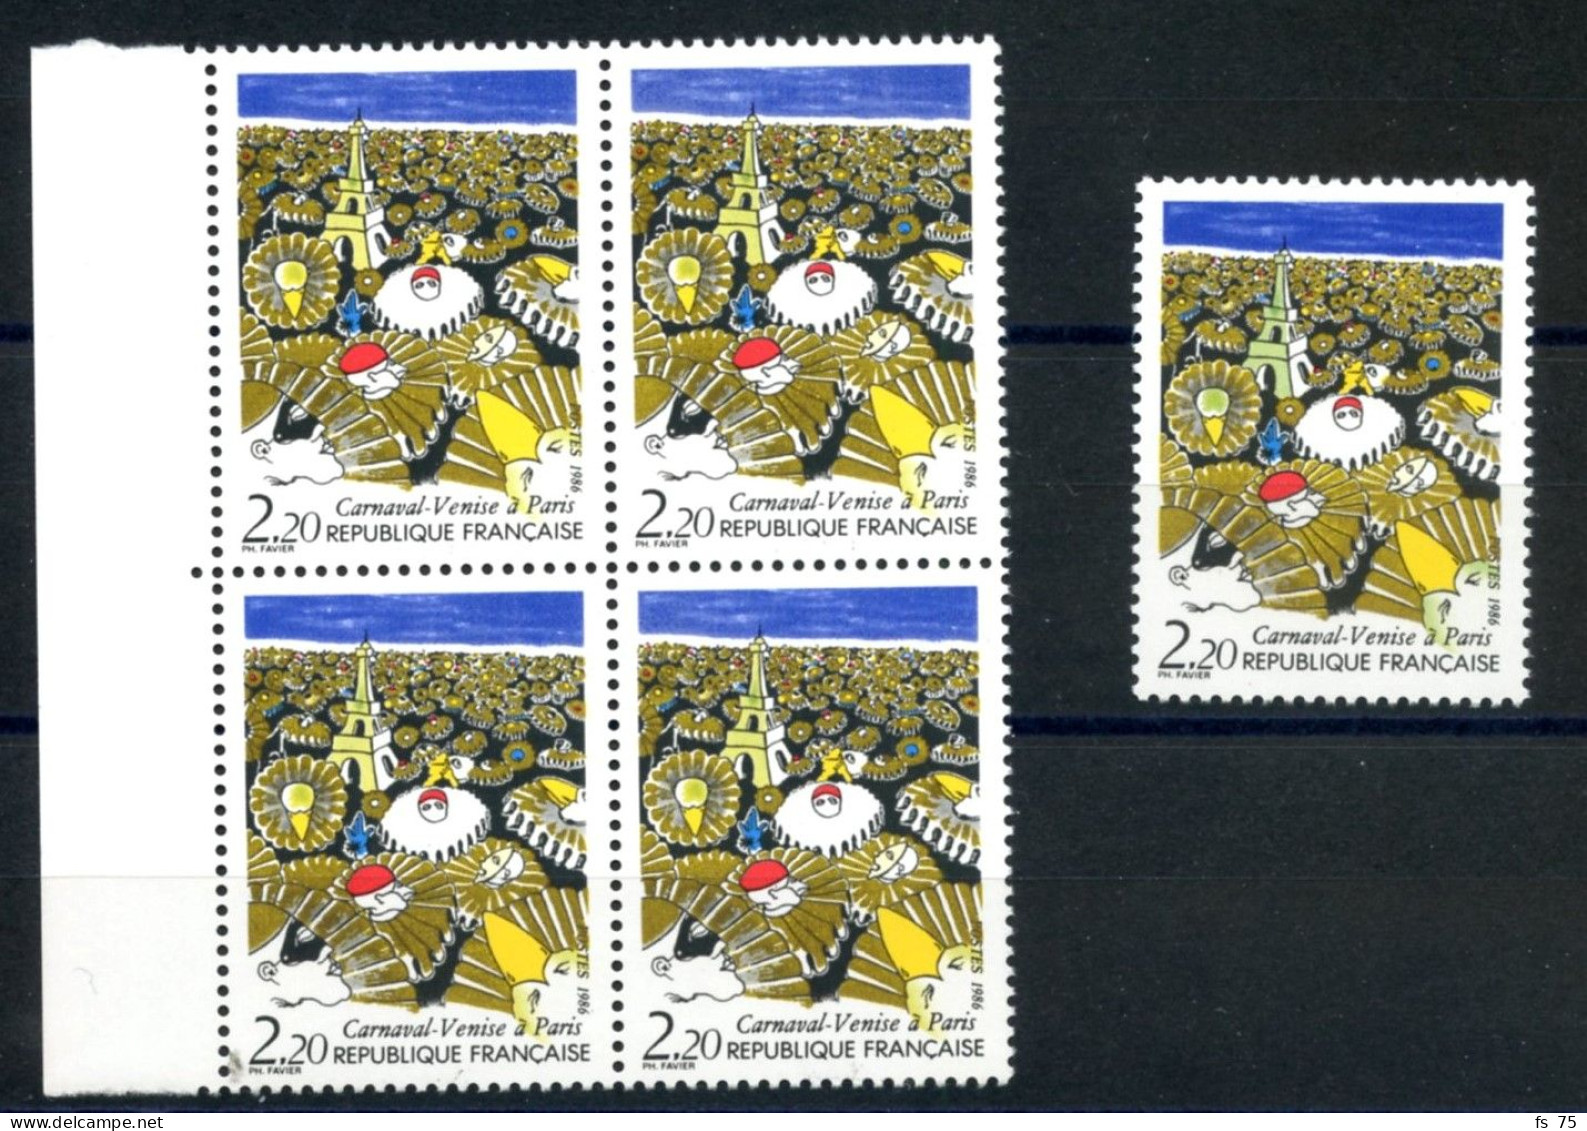 FRANCE - N°2395 2F20 CARNAVAL DE VENISE VARIETE TOUR EIFFEL JAUNE AU LIEU DE VERTE EN BLOC DE 4 SANS CHARNIERE ** - Unused Stamps